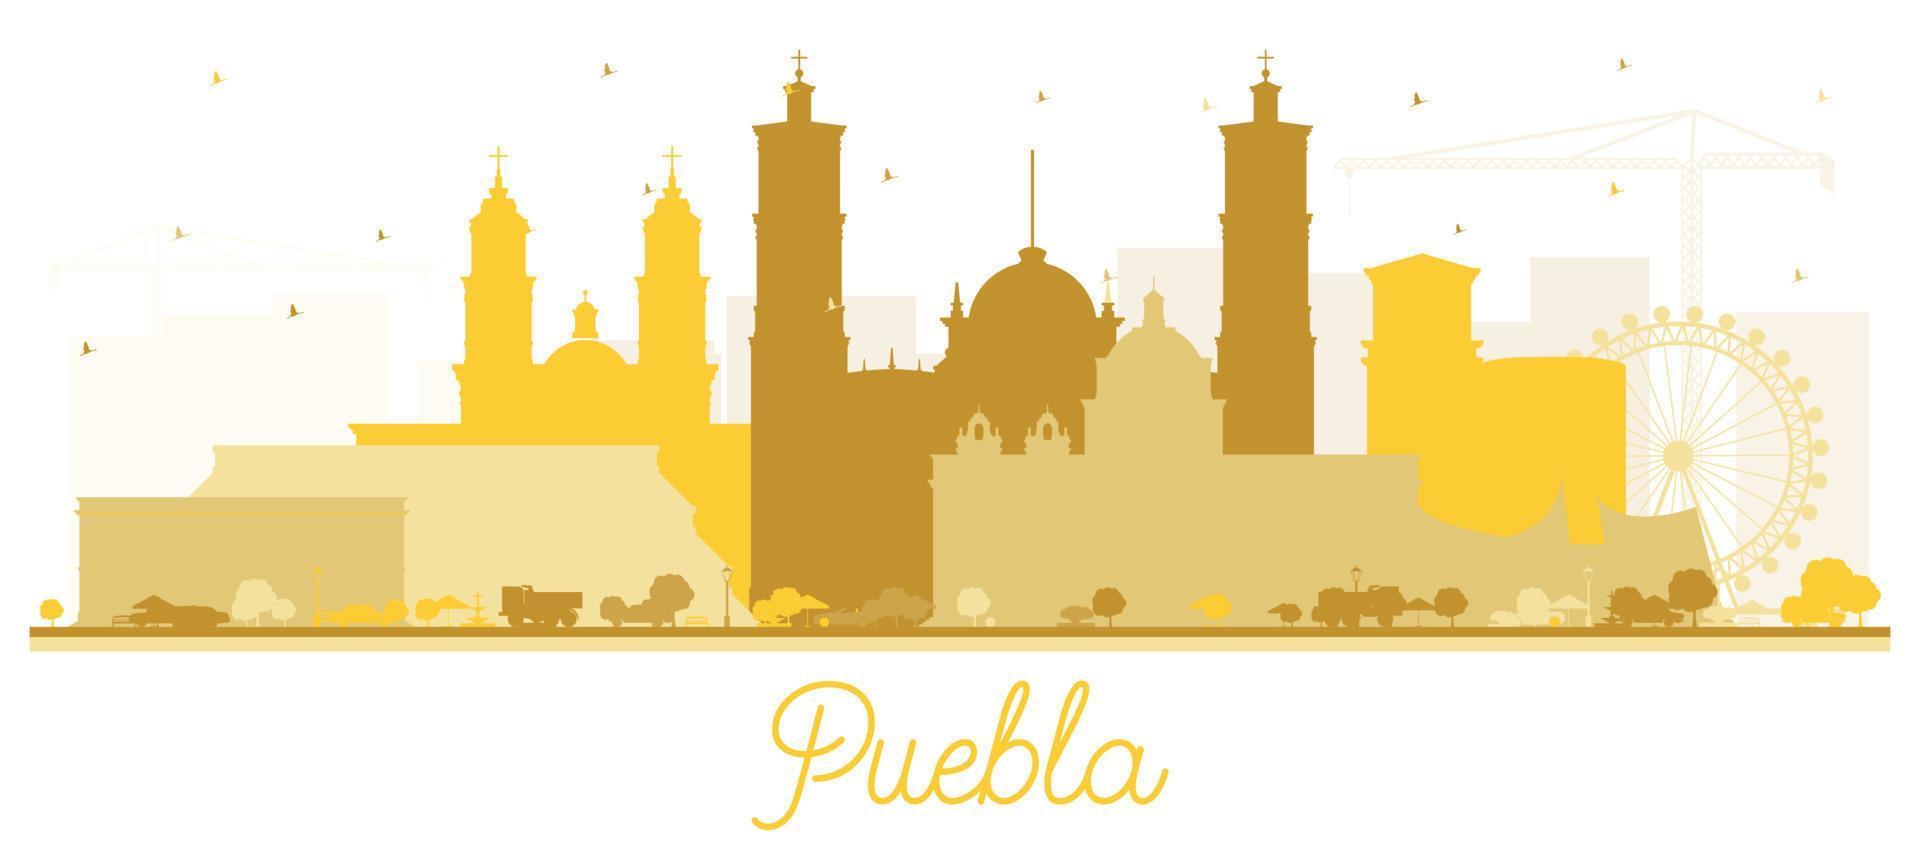 silhueta do horizonte da cidade do méxico puebla com edifícios dourados isolados no branco. vetor